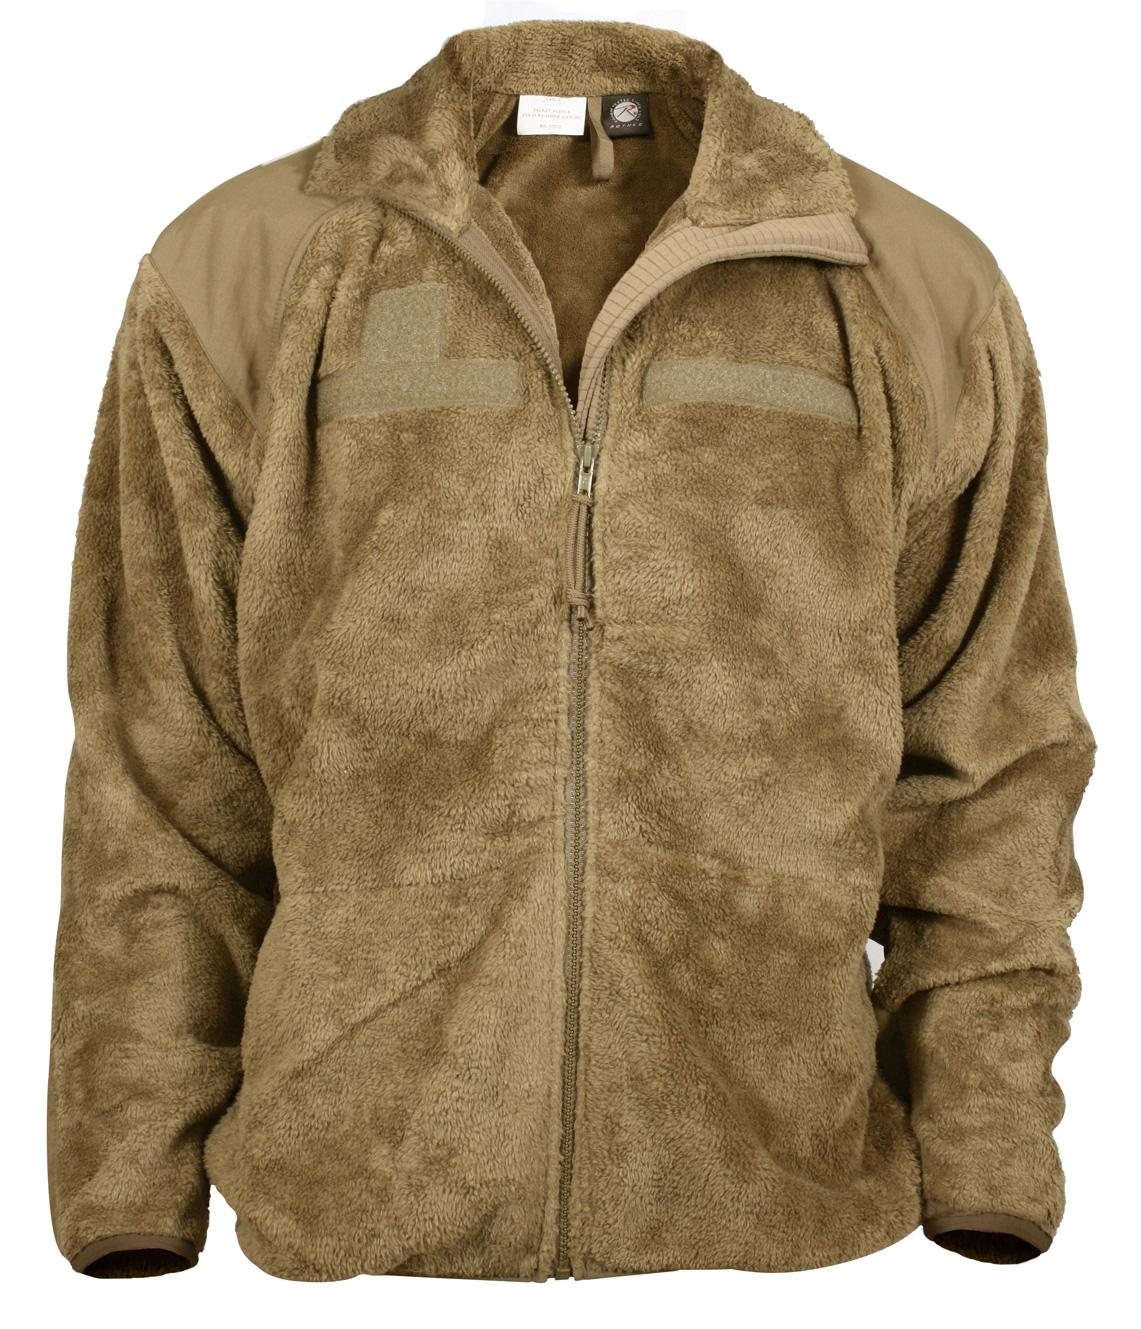 Gen iii level 3 ecwcs jacket - Jackets & vests